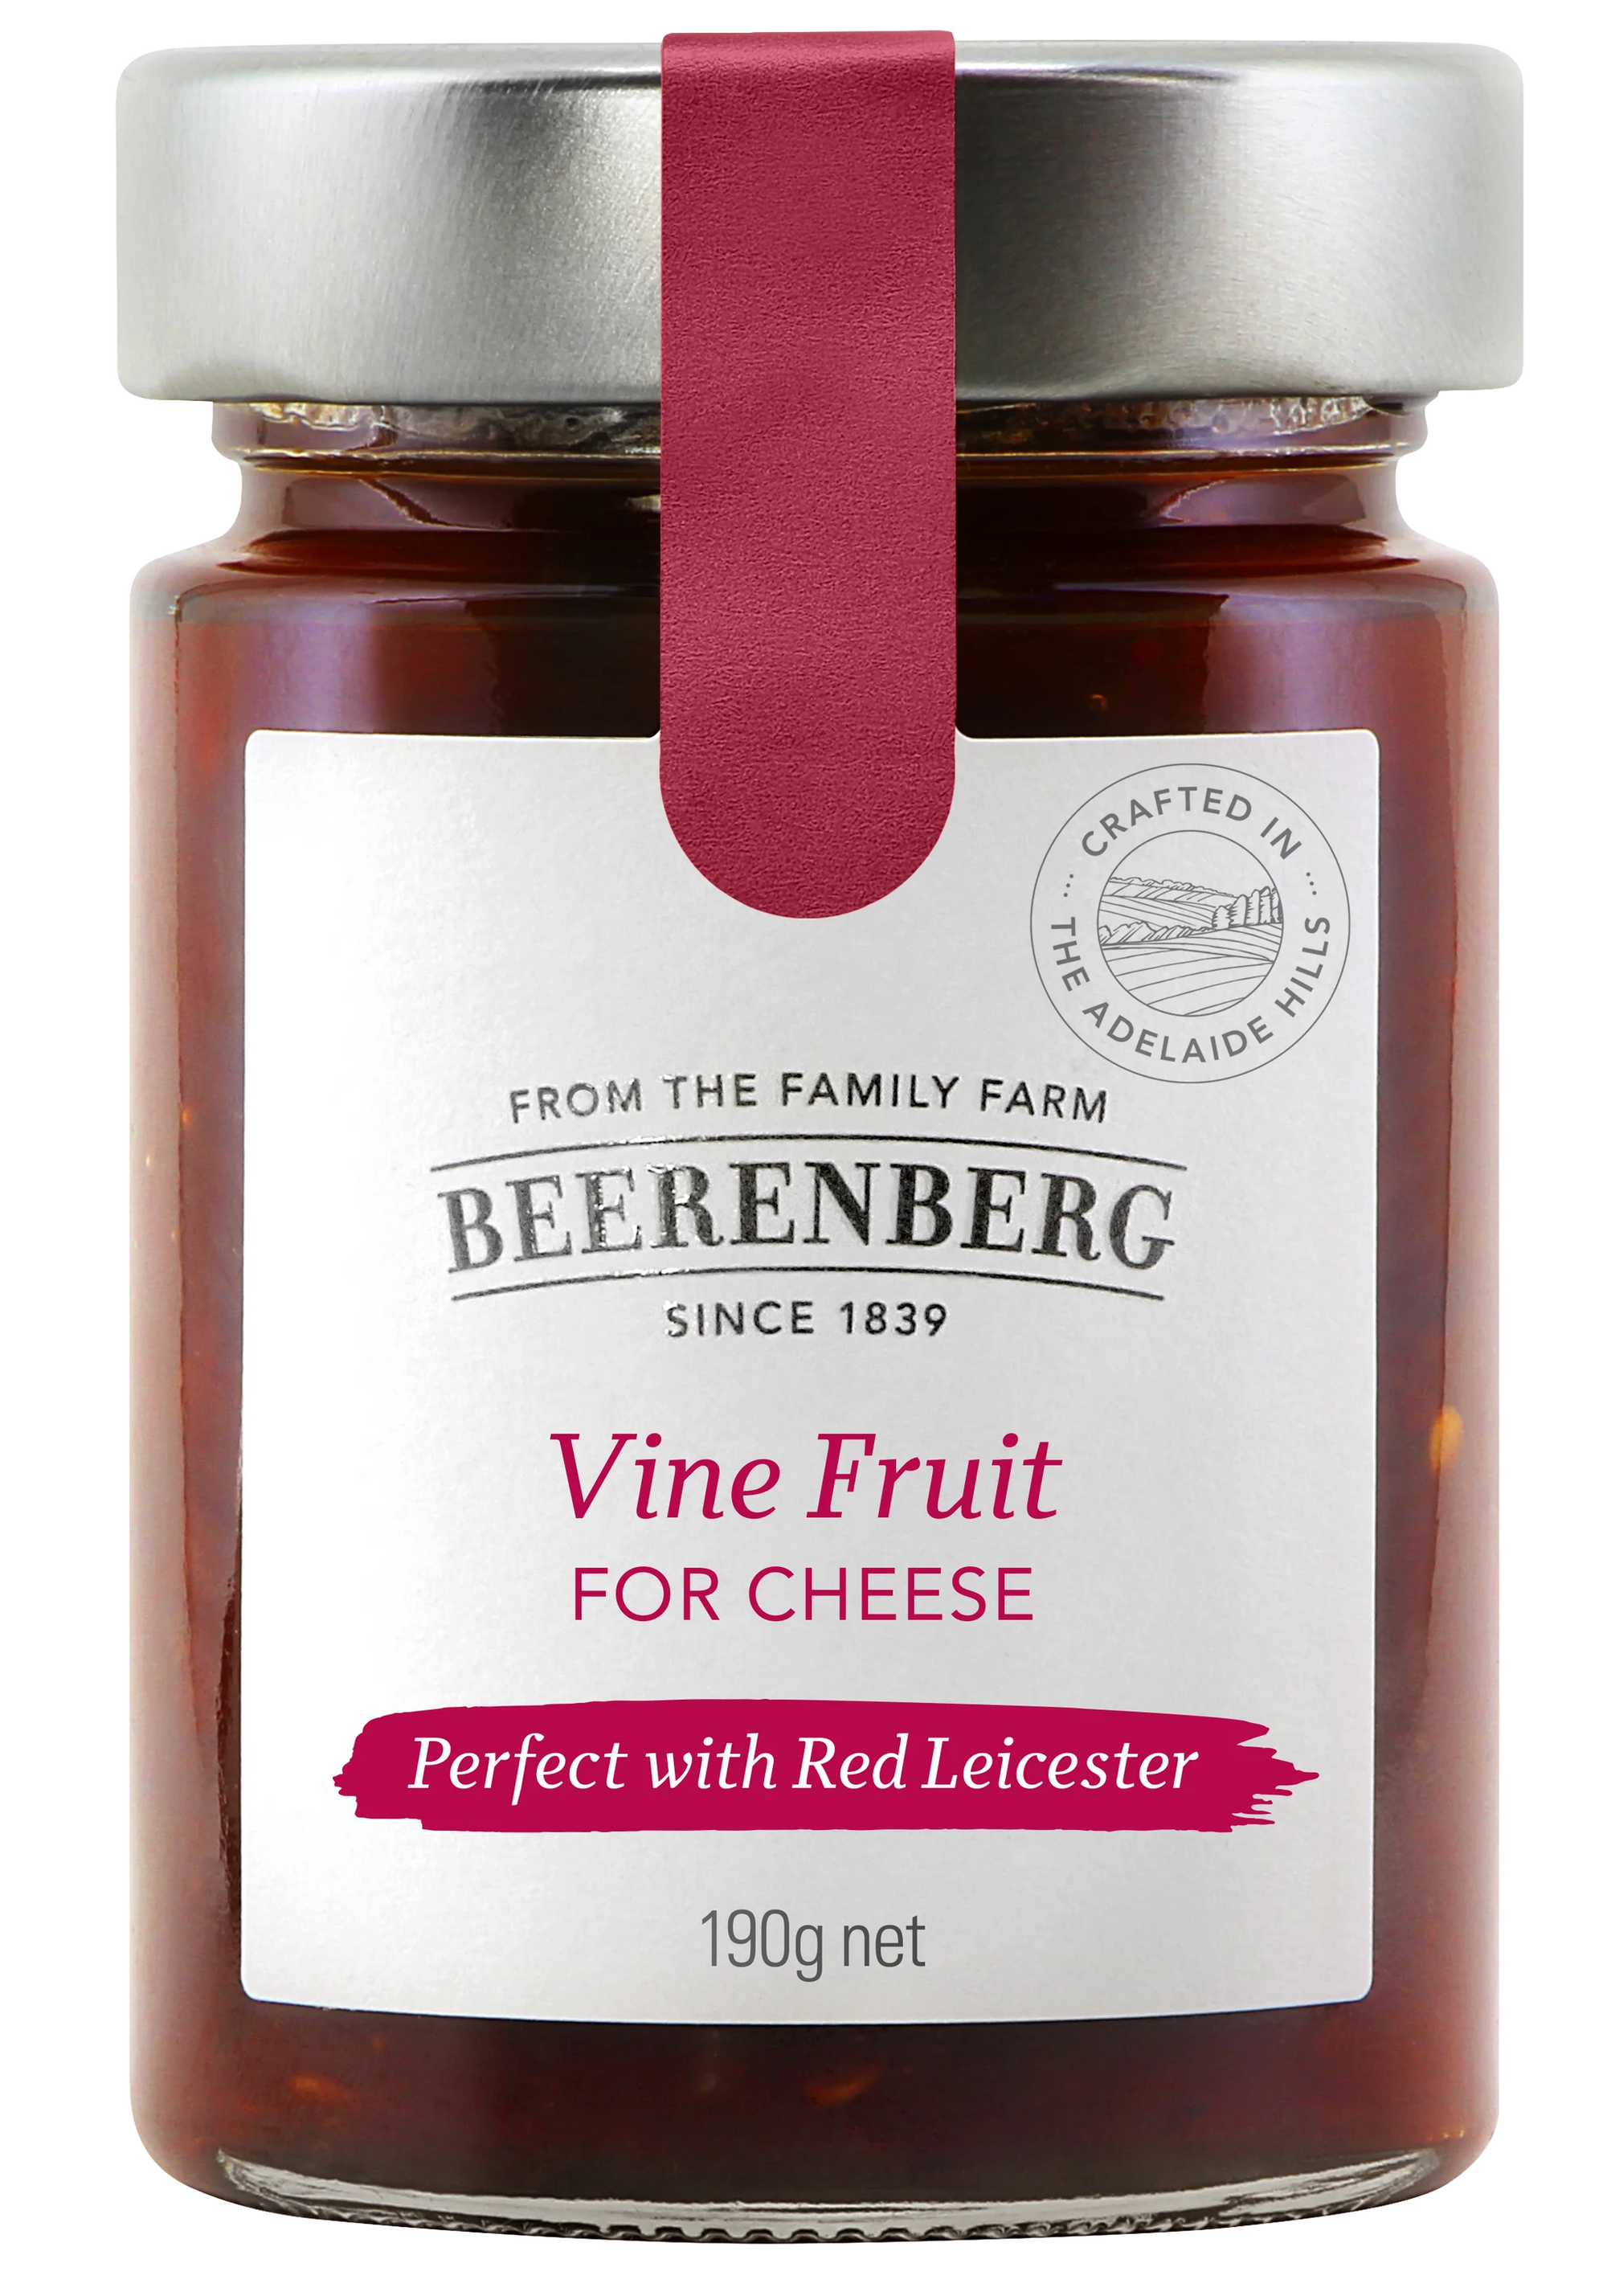 Beerenberg Vine Fruit for Cheese 190g